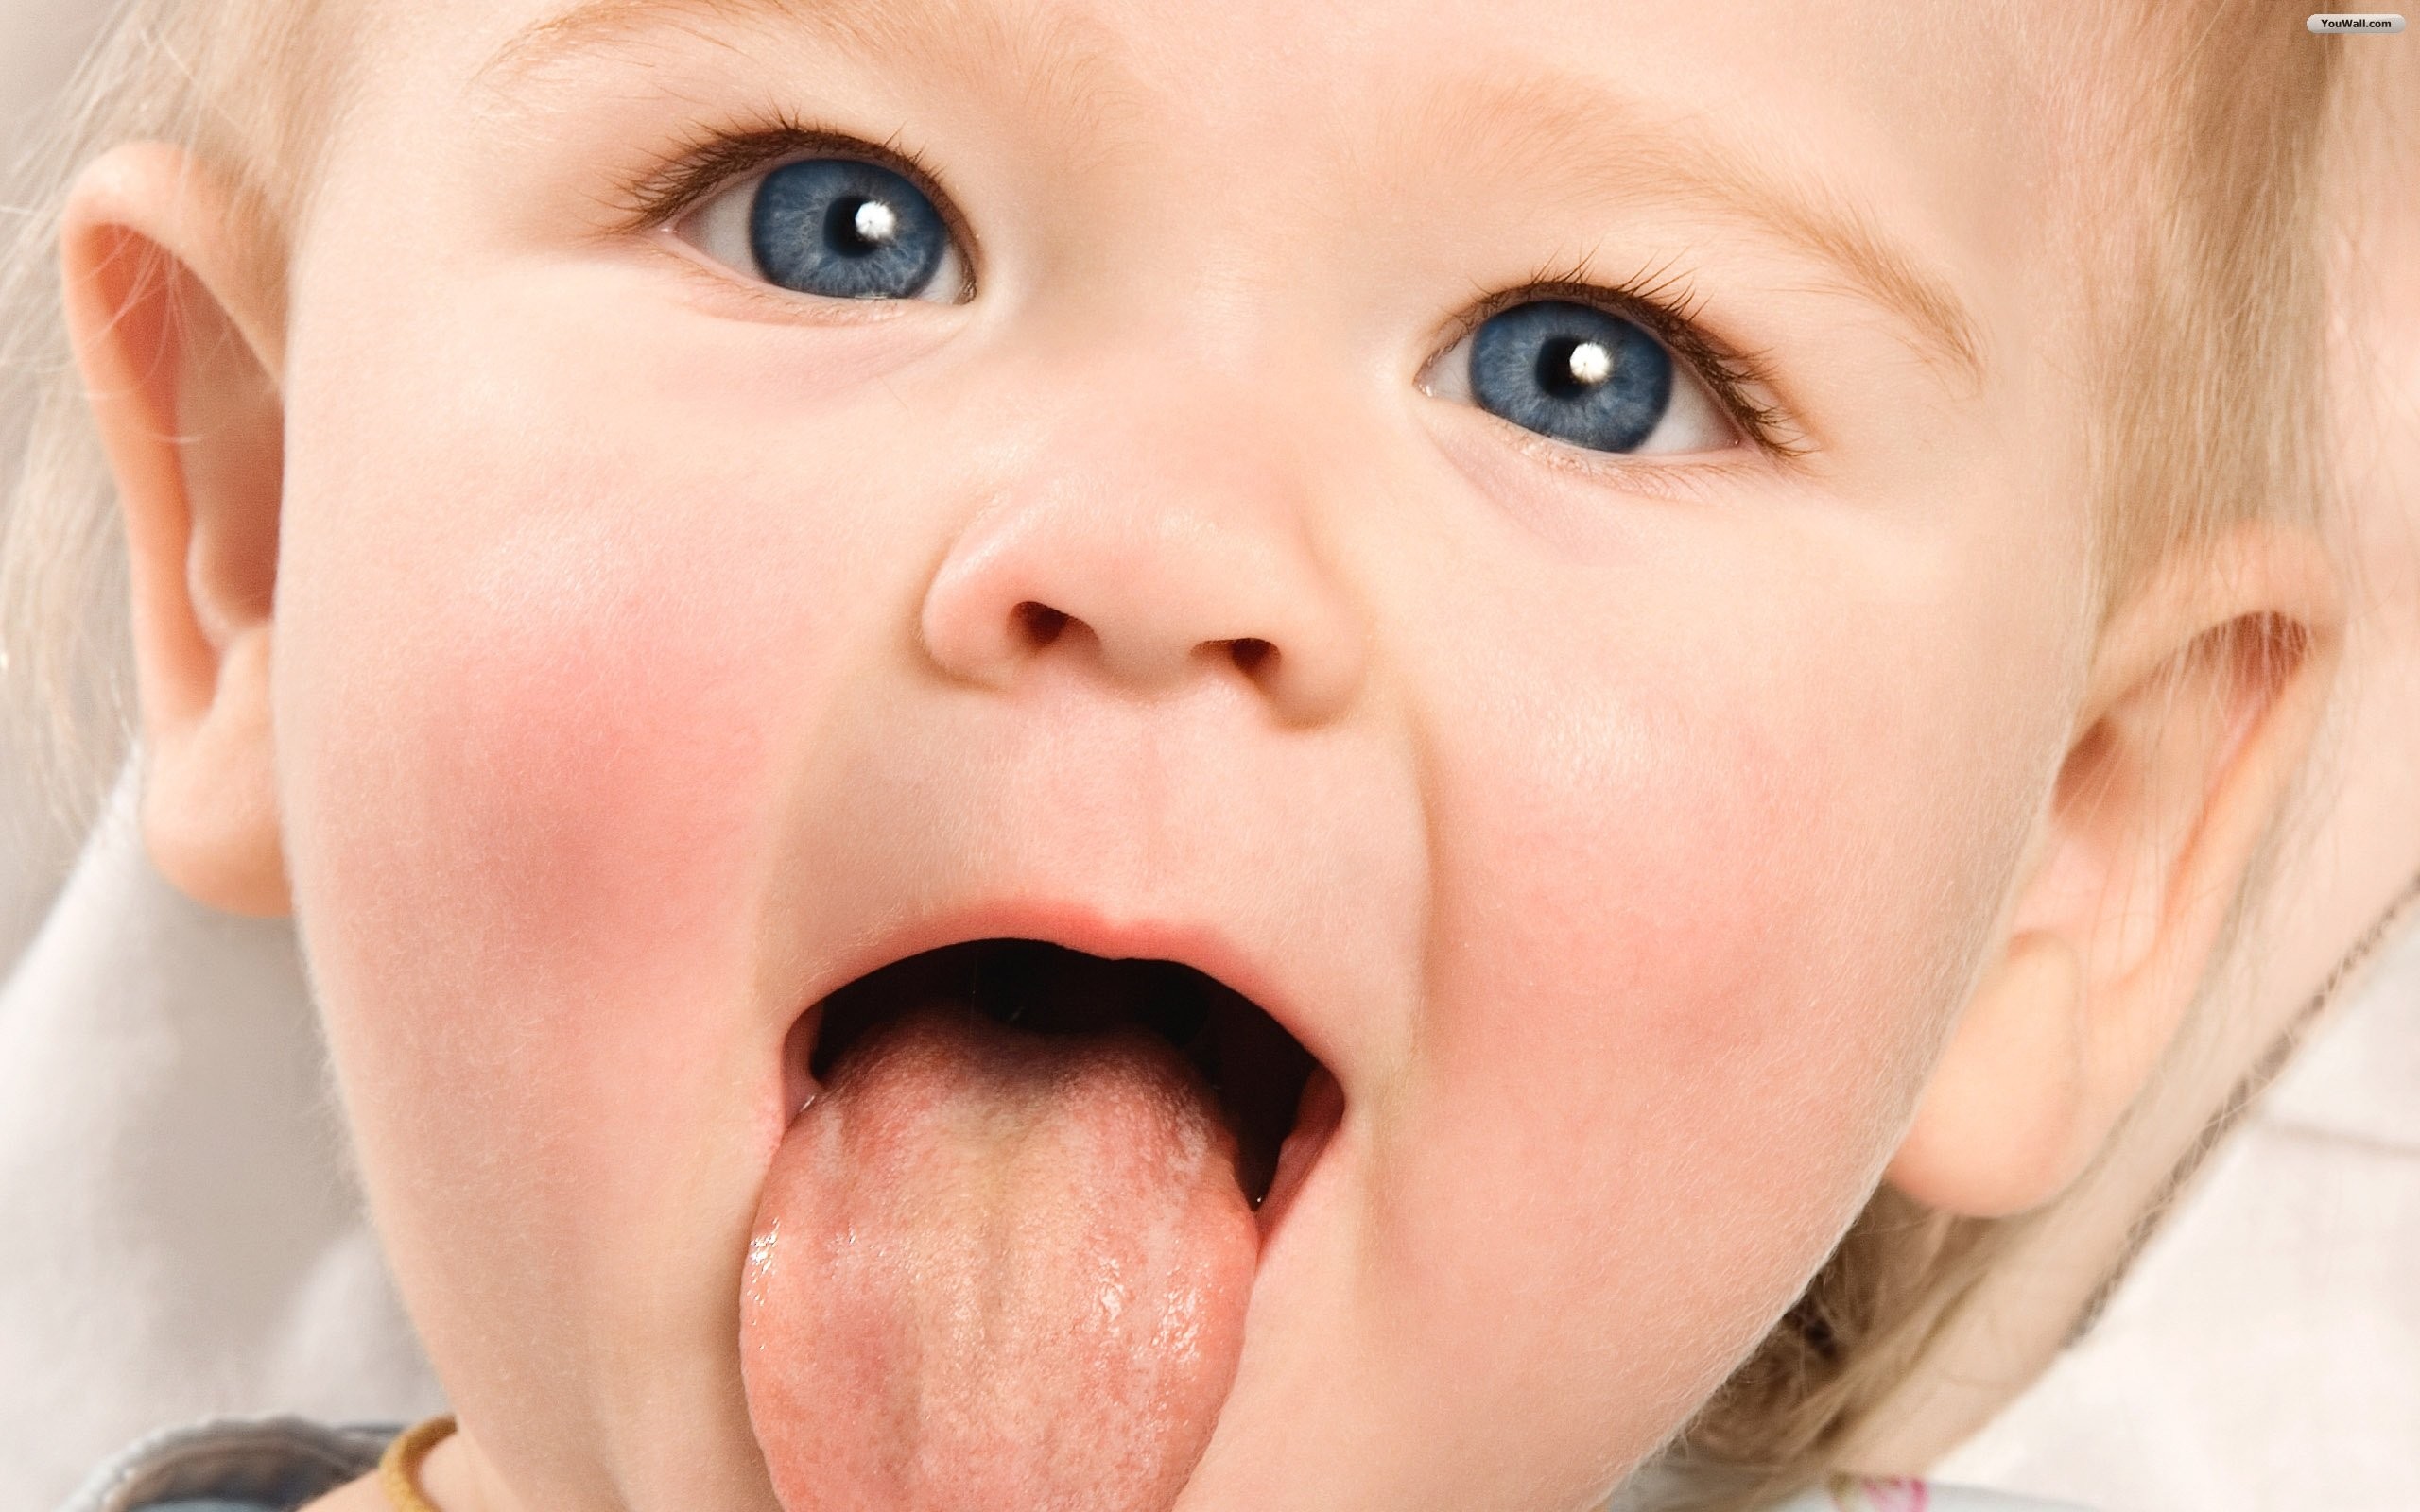 nấm lưỡi ở trẻ nhỏ, nấm lưỡi ở trẻ sơ sinh, nấm lưỡi ở trẻ em có nguy hiểm không, nấm lưỡi ở trẻ em có lây không, nấm lưỡi ở bé sơ sinh, nấm lưỡi bản đồ ở trẻ nhỏ, cách chữa nấm lưỡi ở trẻ nhỏ, hiện tượng nấm lưỡi ở trẻ nhỏ, trị nấm lưỡi ở trẻ sơ sinh, thuốc điều trị nấm lưỡi ở trẻ nhỏ, benh nấm lưỡi ở trẻ nhỏ, nấm lưỡi ở trẻ